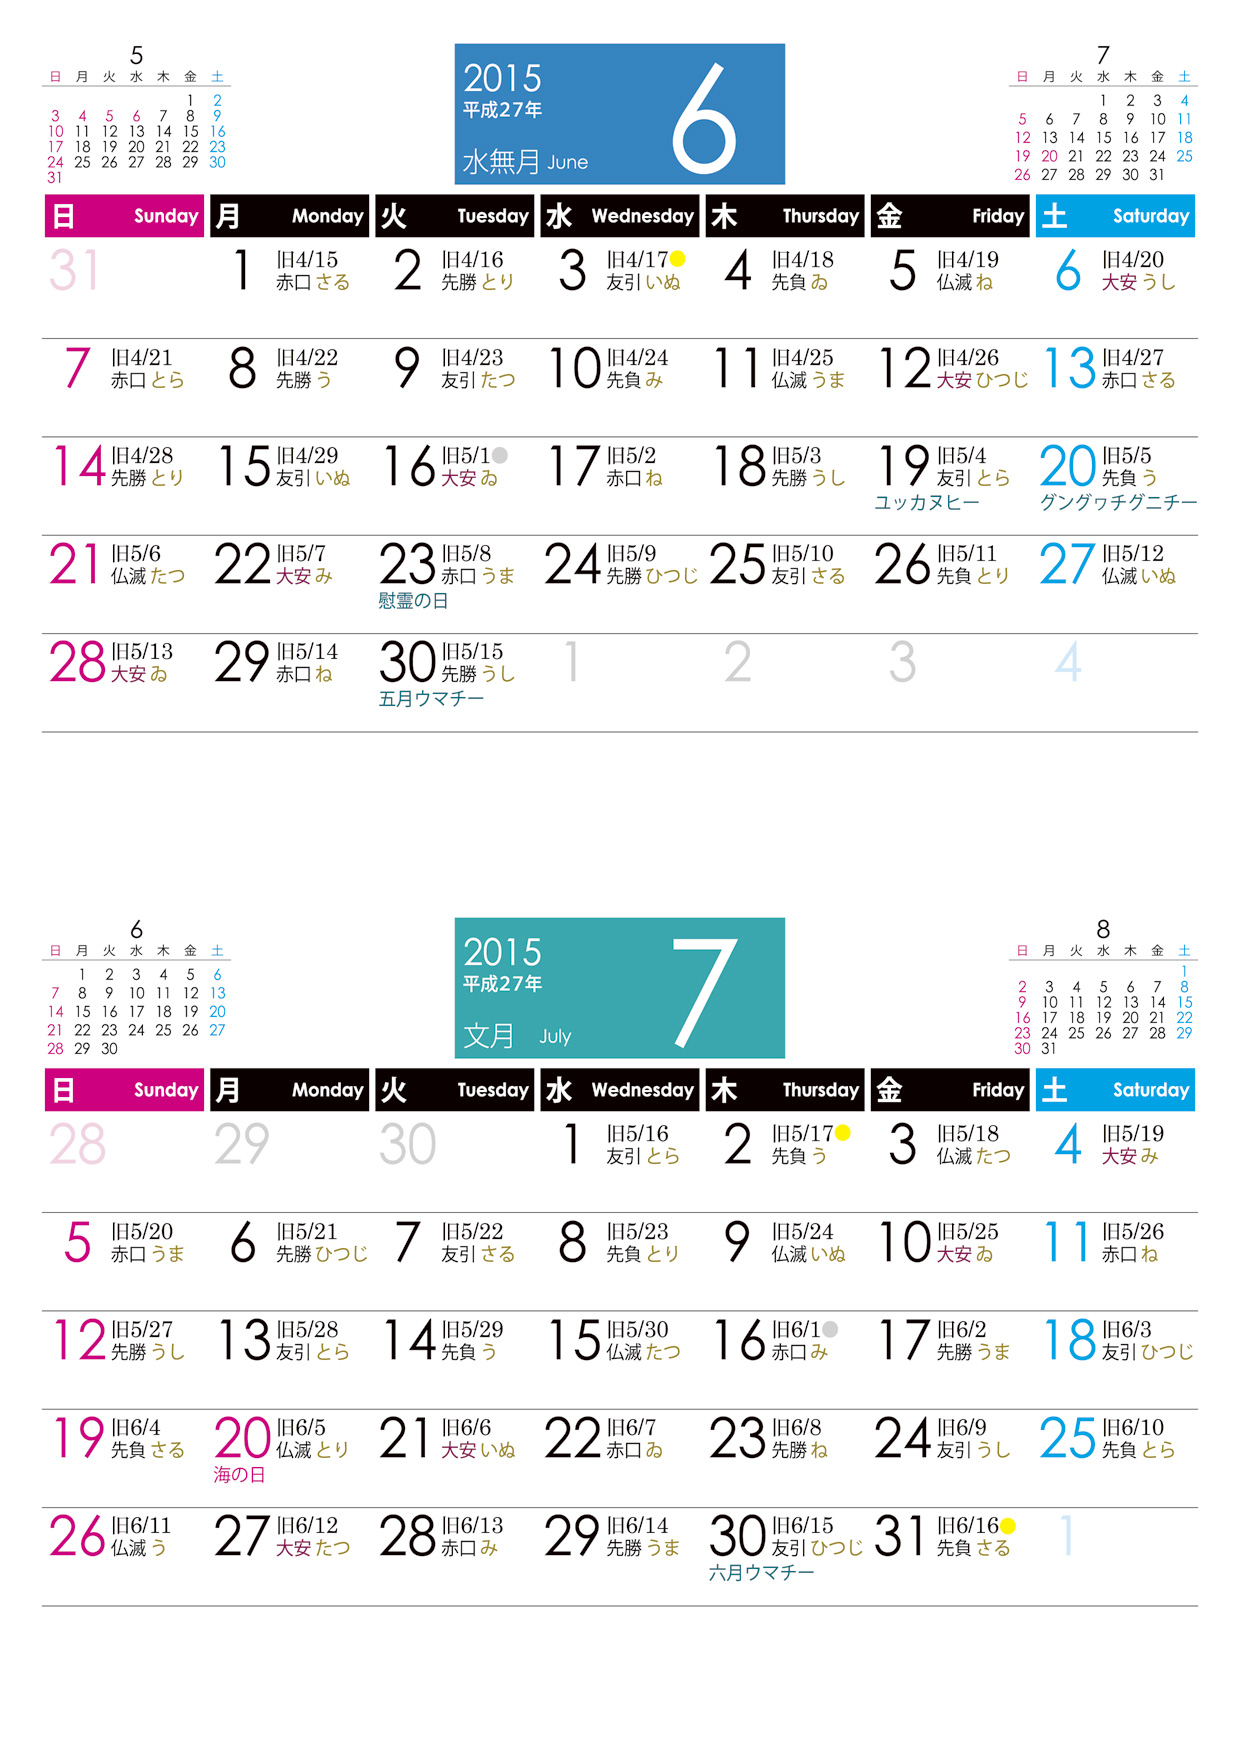 おきなわタウンネットの旧暦入り沖縄カレンダー 2015年版 沖縄観光 生活 移住情報サイト 沖縄タウンネット